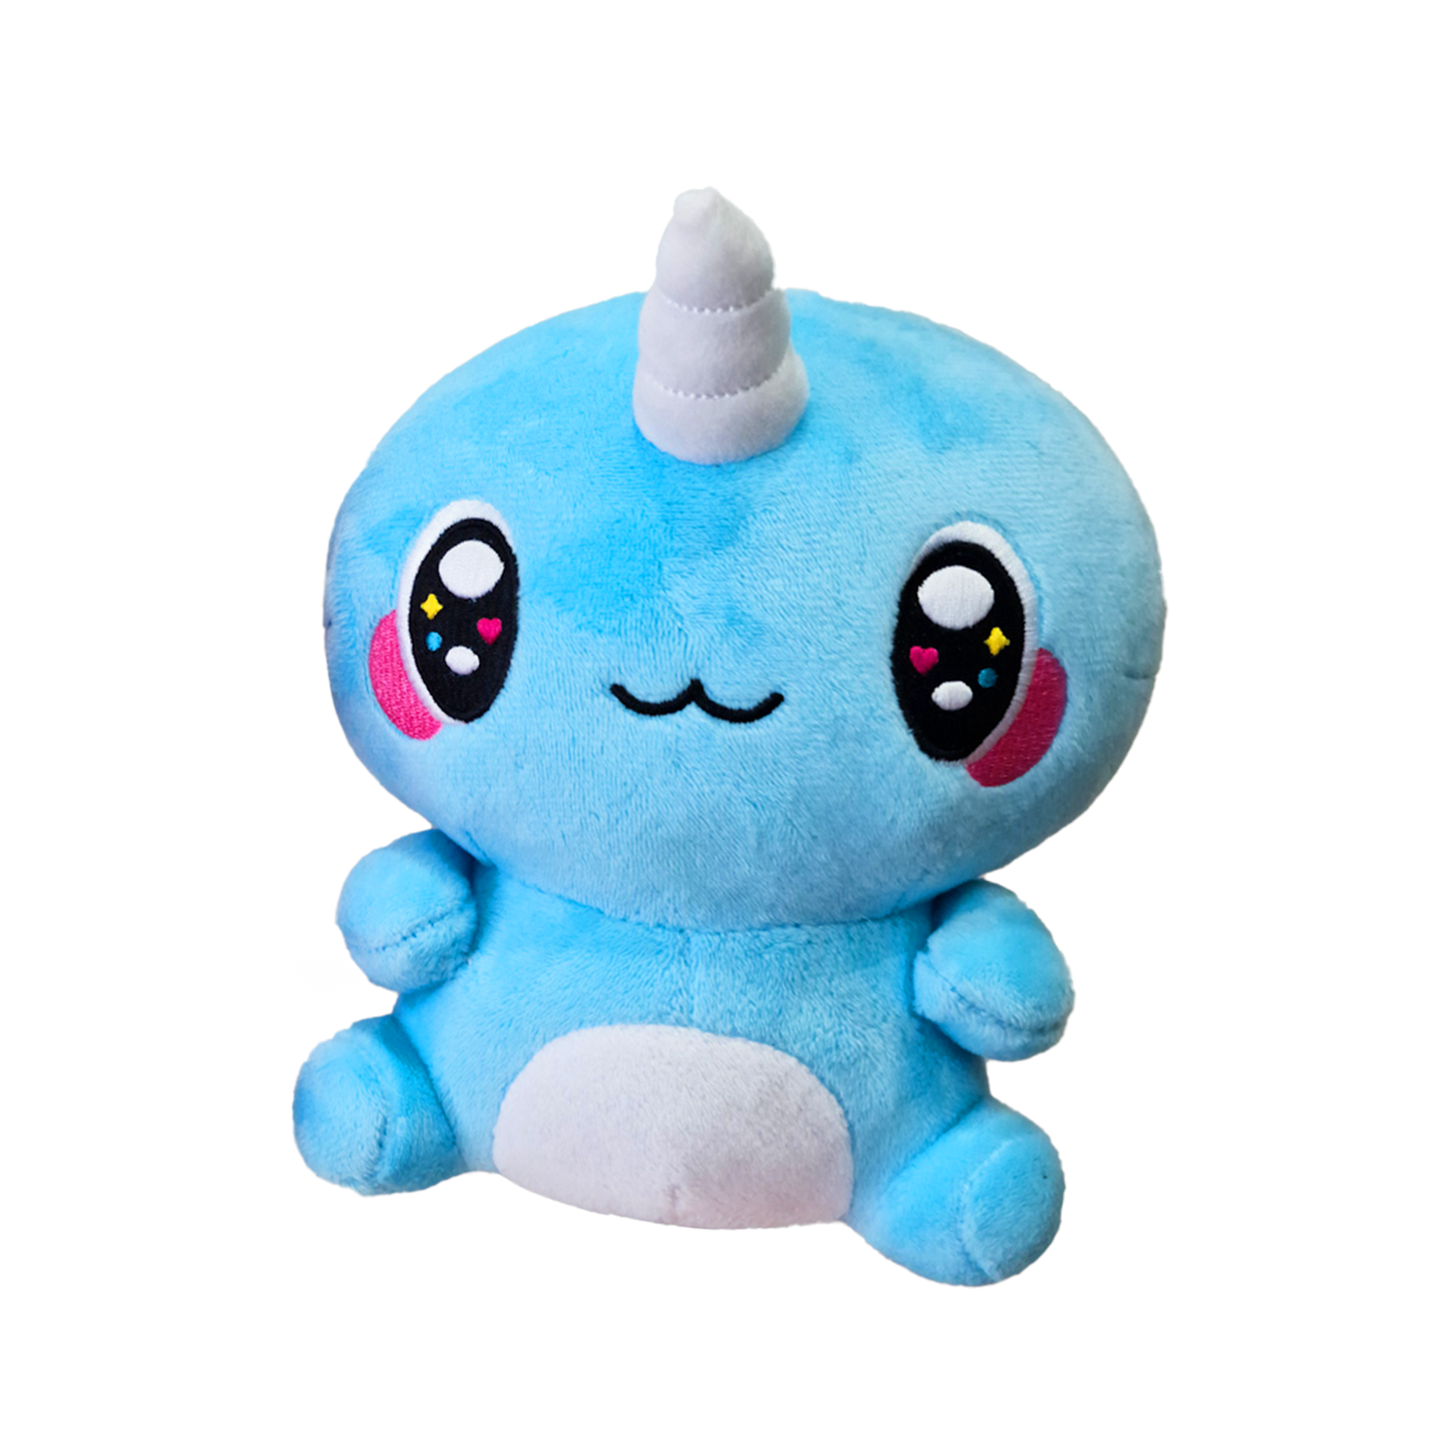 Naru Plush Toy - Blue